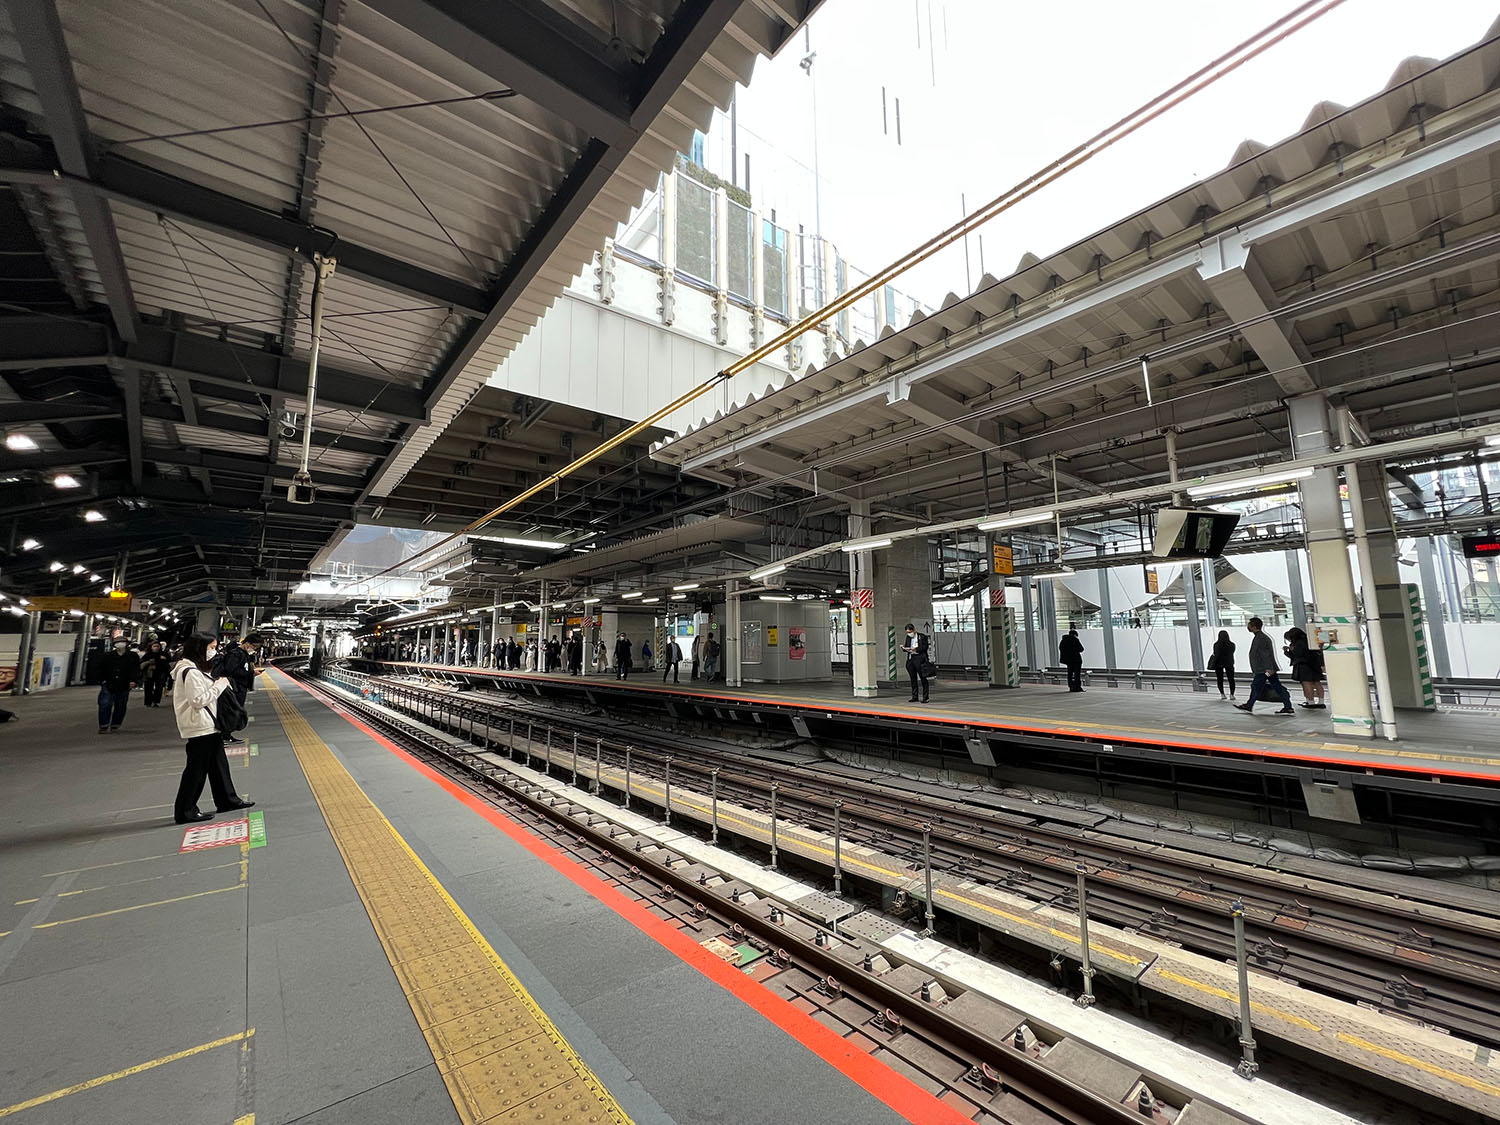 改良工事を終えた渋谷駅のホーム。なんか、別の駅のように見える……。